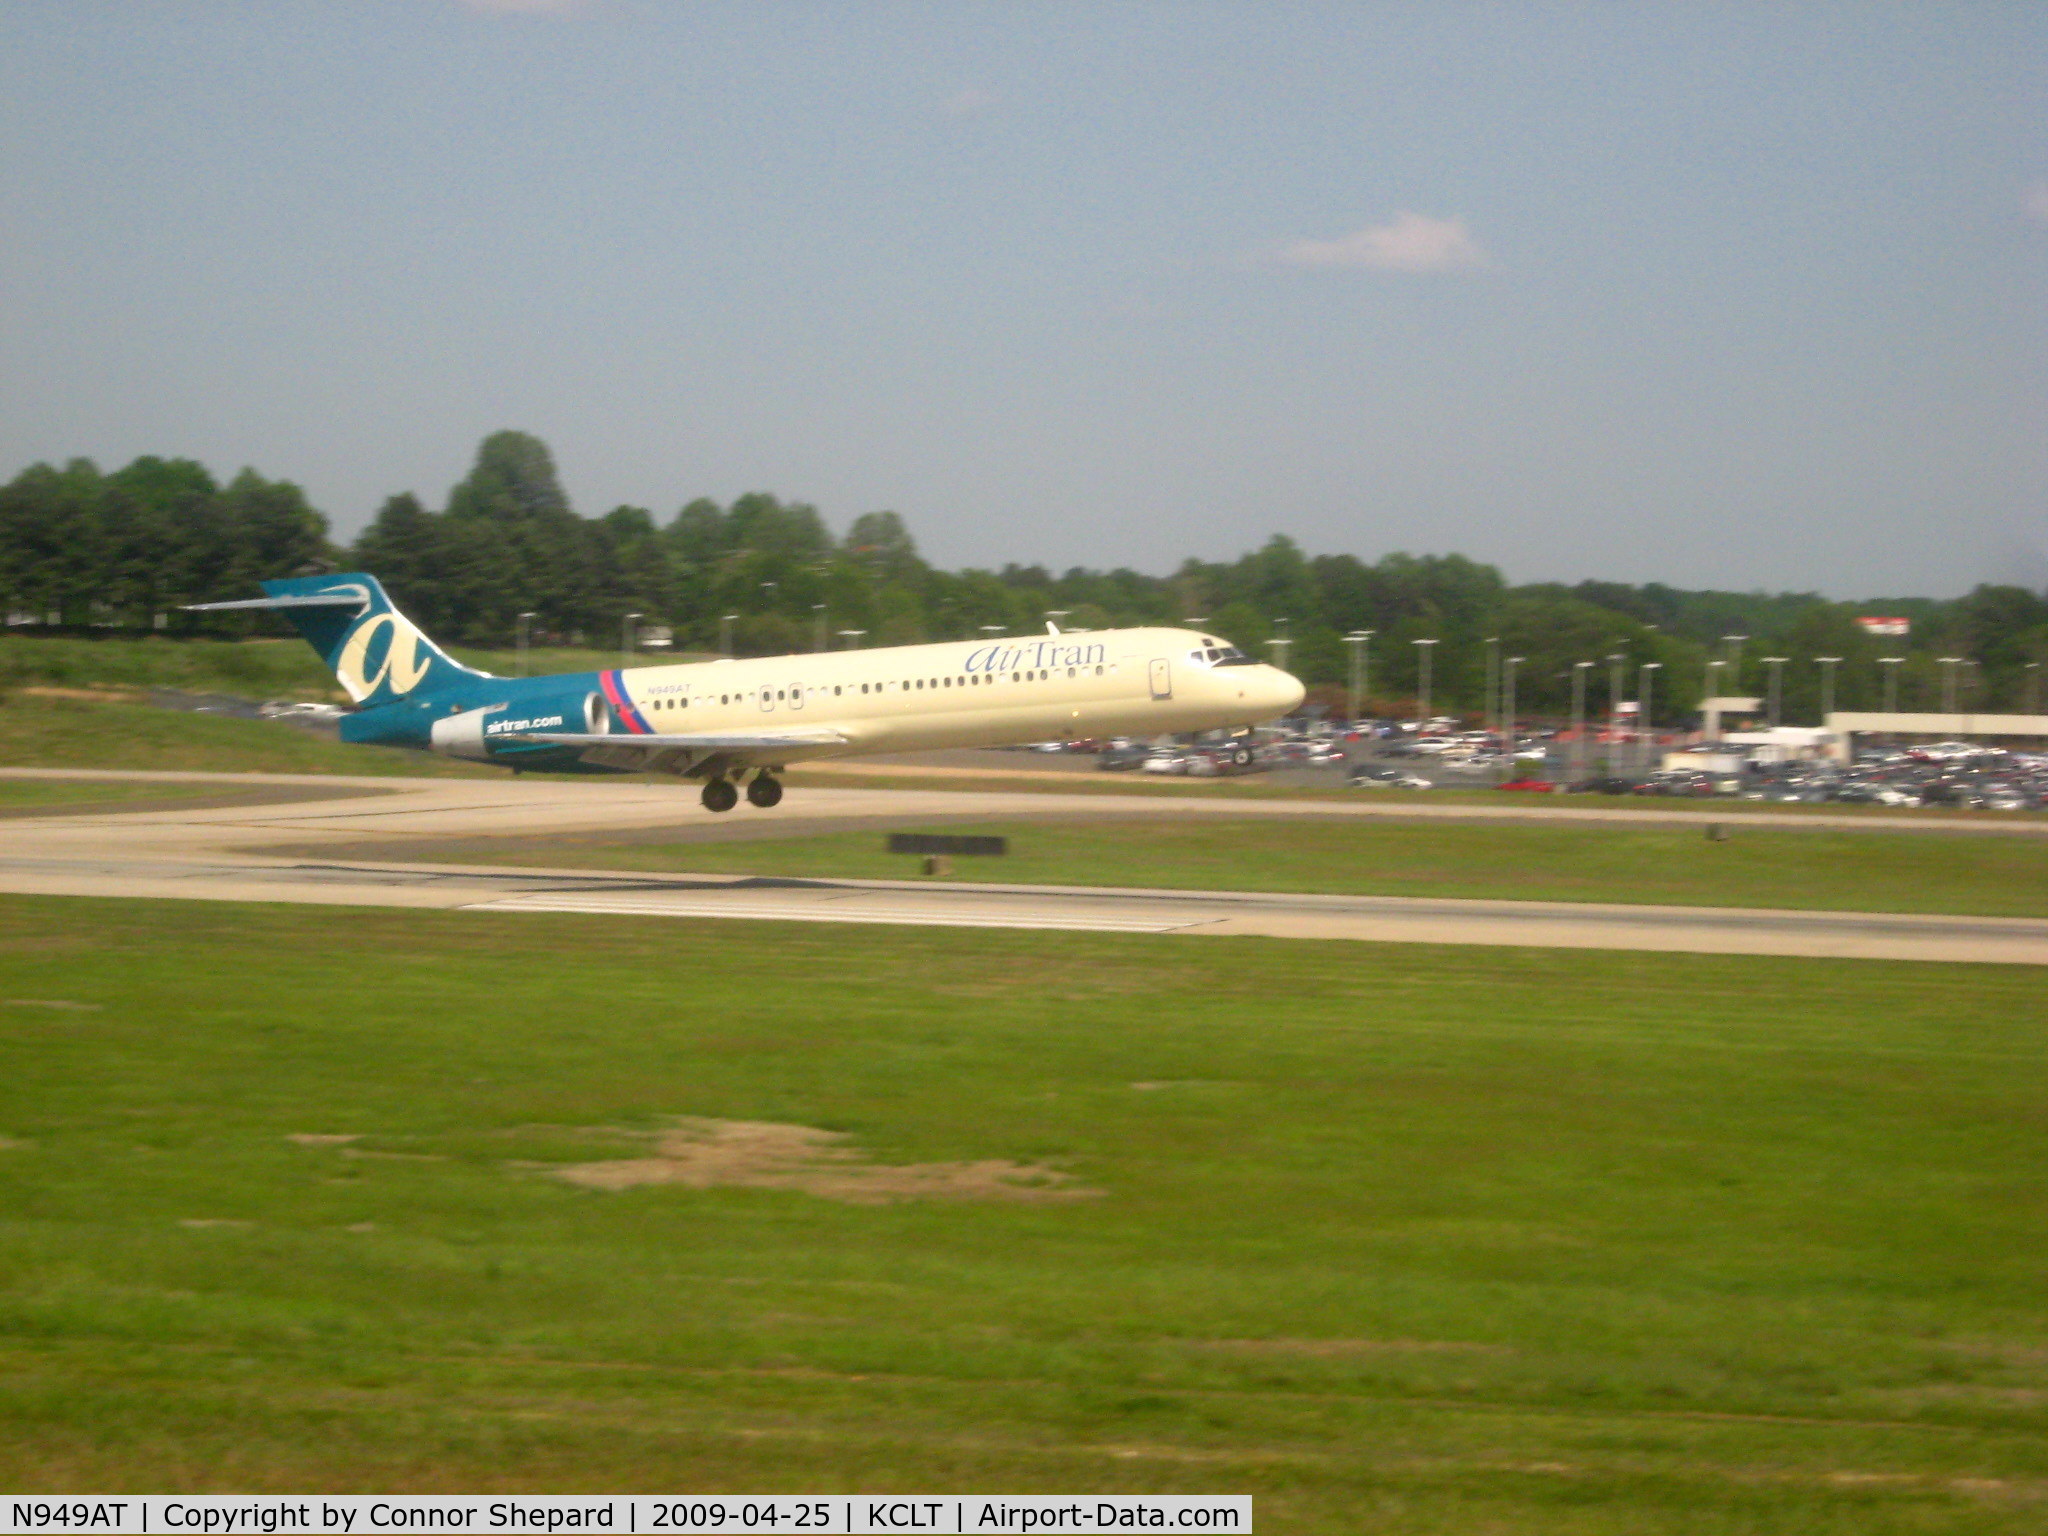 N949AT, 1999 Boeing 717-200 C/N 55003, Boeing 717